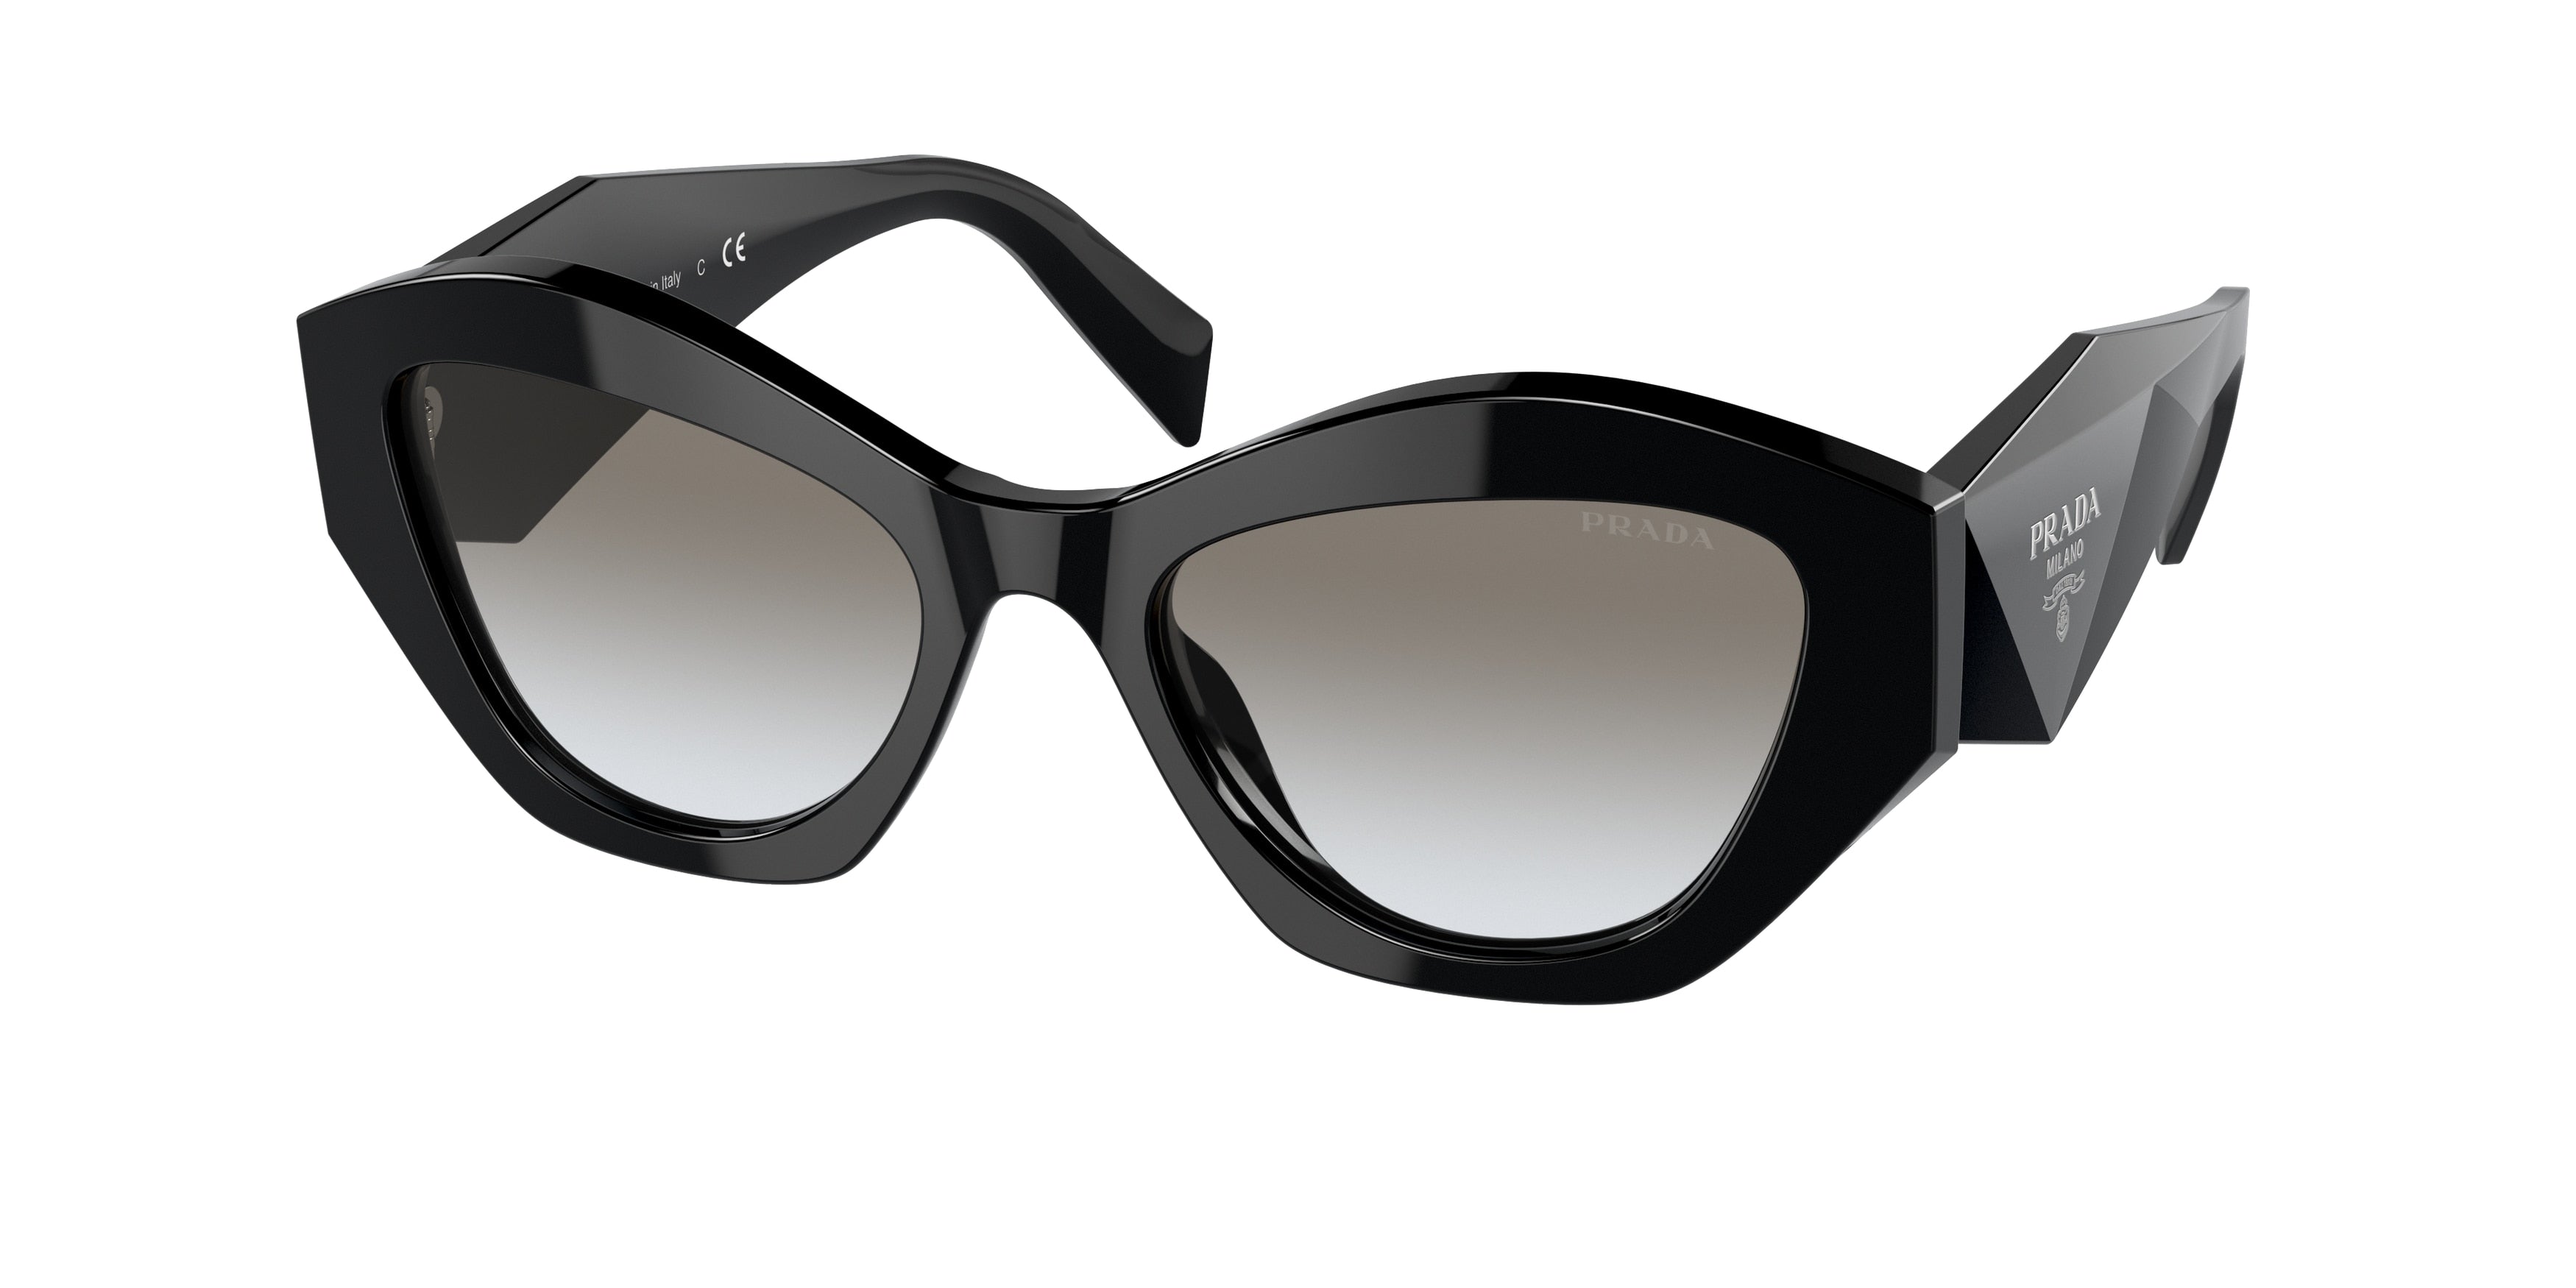 Prada PR07YSF Irregular Sunglasses  1AB0A7-Black 54-145-18 - Color Map Black